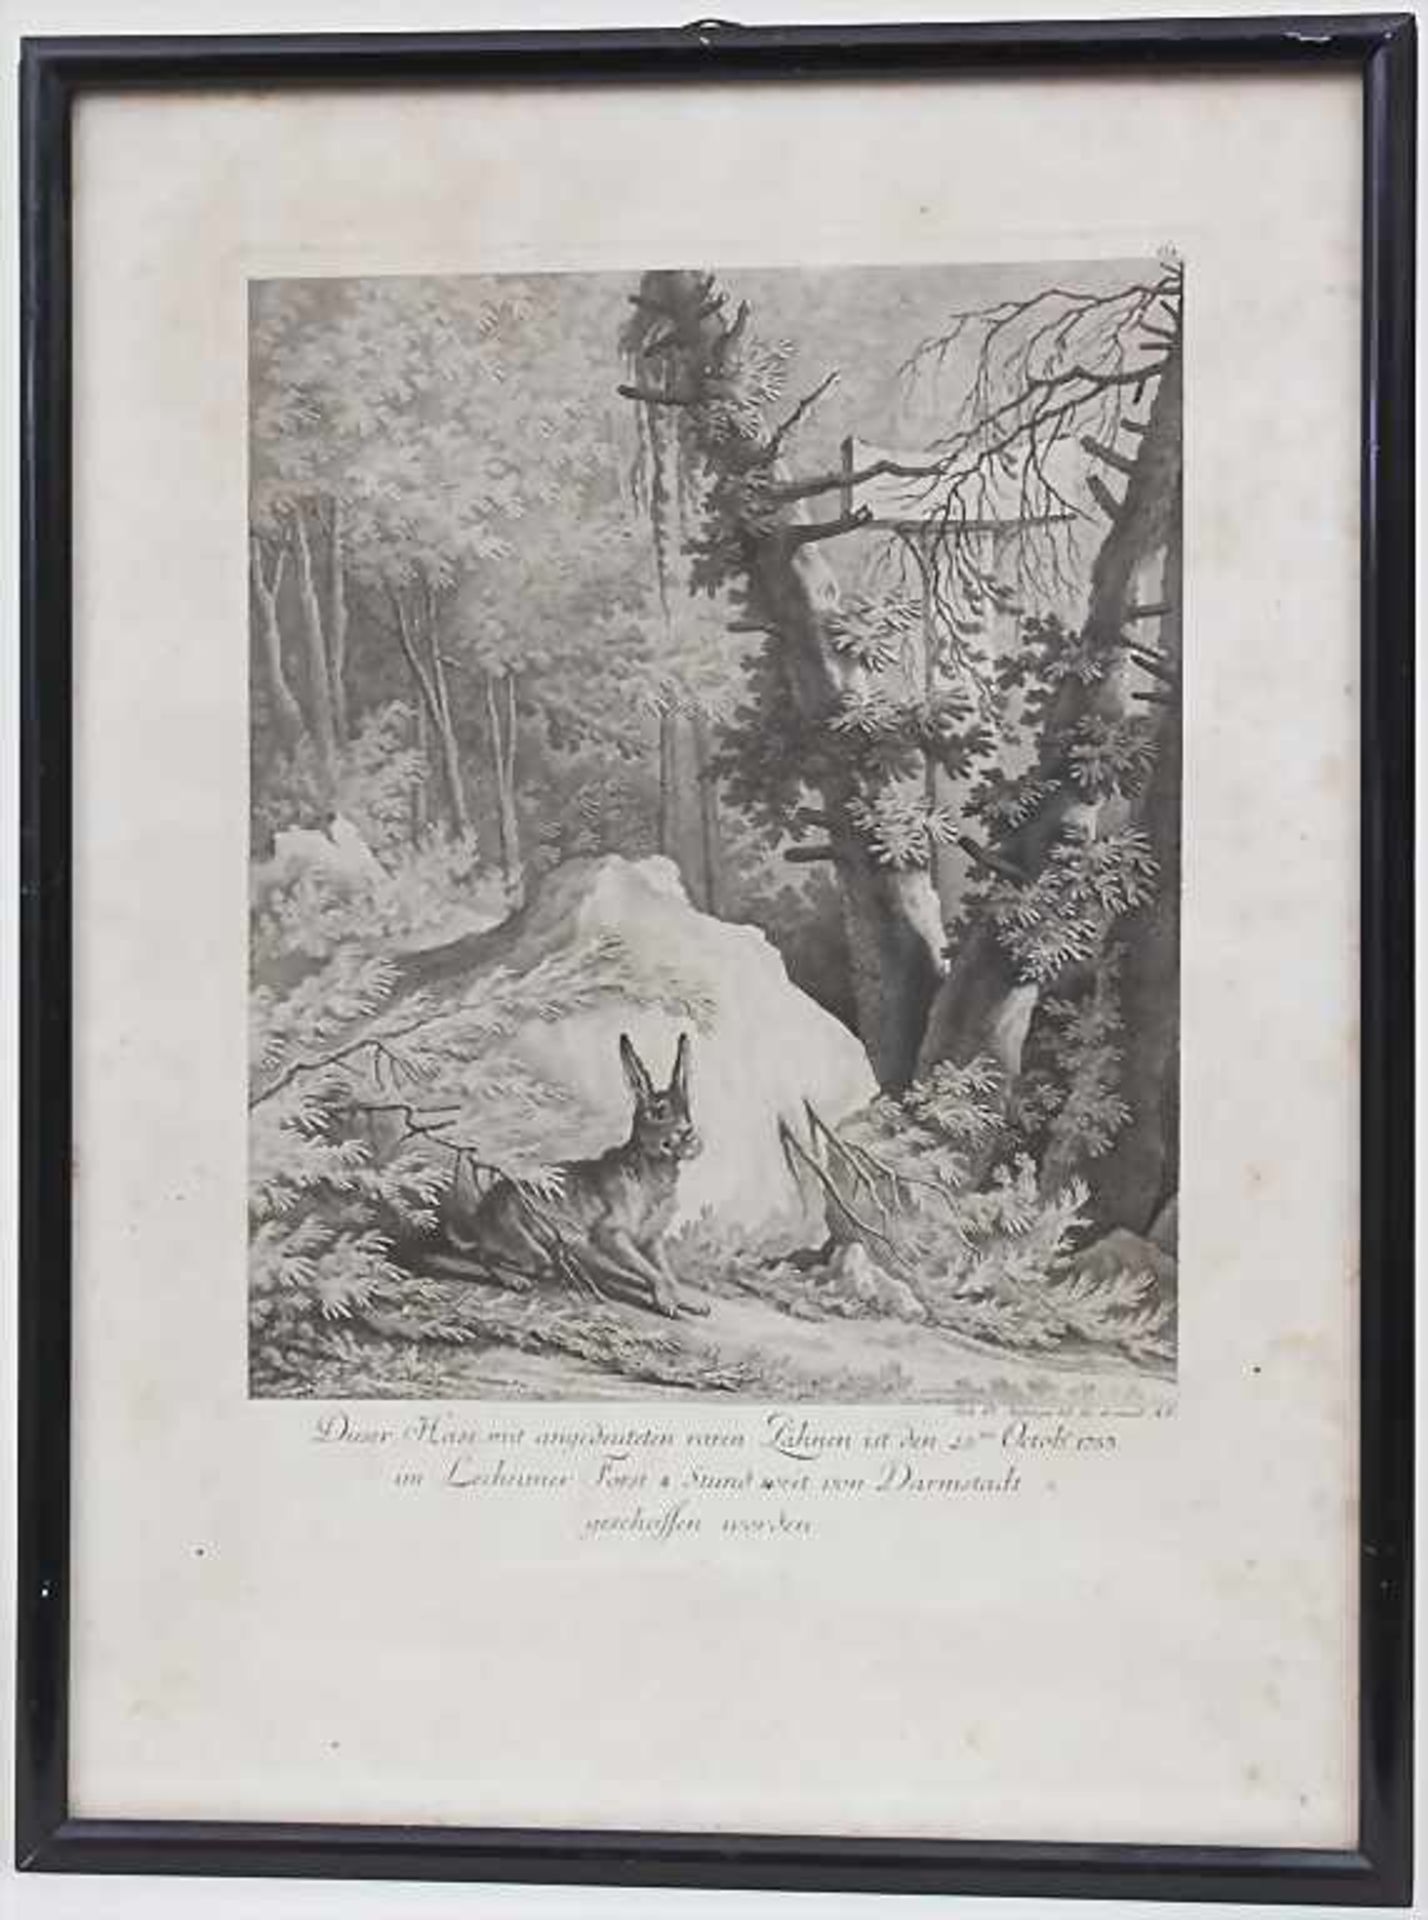 Johann Elias Ridinger (1698-1767), 'Dieser Hase mit angedeuteten raren Zähnen'< - Image 2 of 4